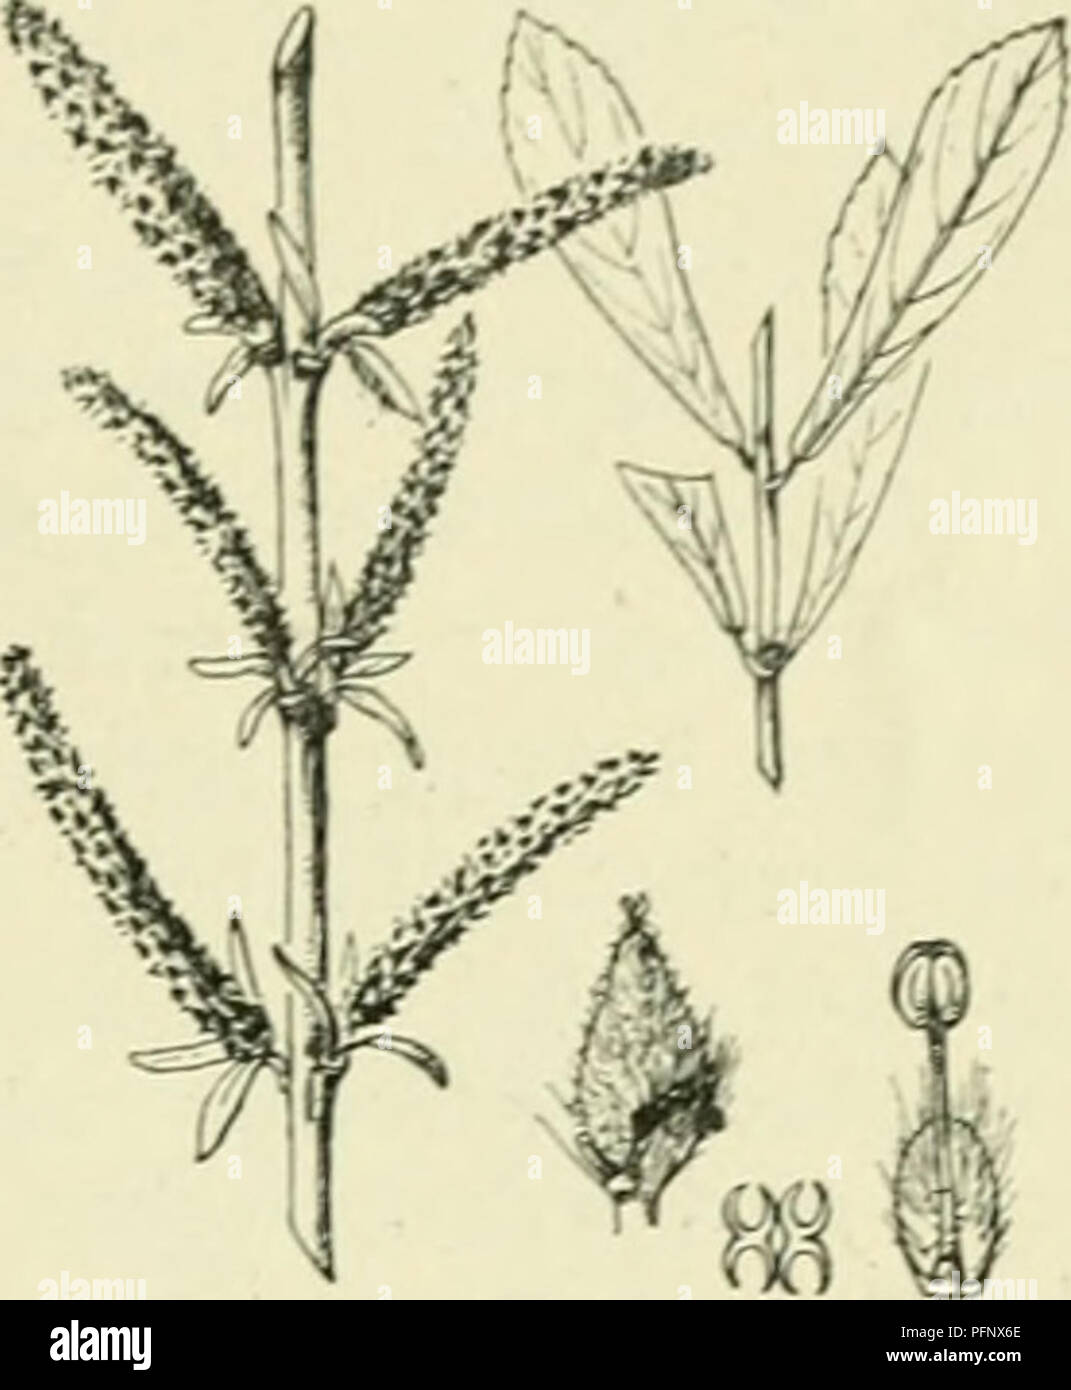 . De flora van Nederland. Plants. FAMILIE 25. — SAÜCACEAE. 35. Saliz purpurea Fig. 32. bool van rouw), doch alleen vrouwelijke exemplaren. Men beweert, dat alle exemplaren in Europa afkomstig zijn van een takje, dat in een mand gevlochten was en door den Engelschen dichter Pope in het begin der 18e eeuw werd geplant. S. purpurea'j L. Bittere wilg. (Fig. 32). Deze heester of boom heeft taaie, dunne, buigzame, glanzende takken, die geelachtig of rood zijn aangeloopen. De binnenschors is des zomers citroengeel. De knoppen zijn kaal. De bladen zijn omgekeerd lancet- tot lijn-lancetvormig (1 :5 a8) Stock Photo